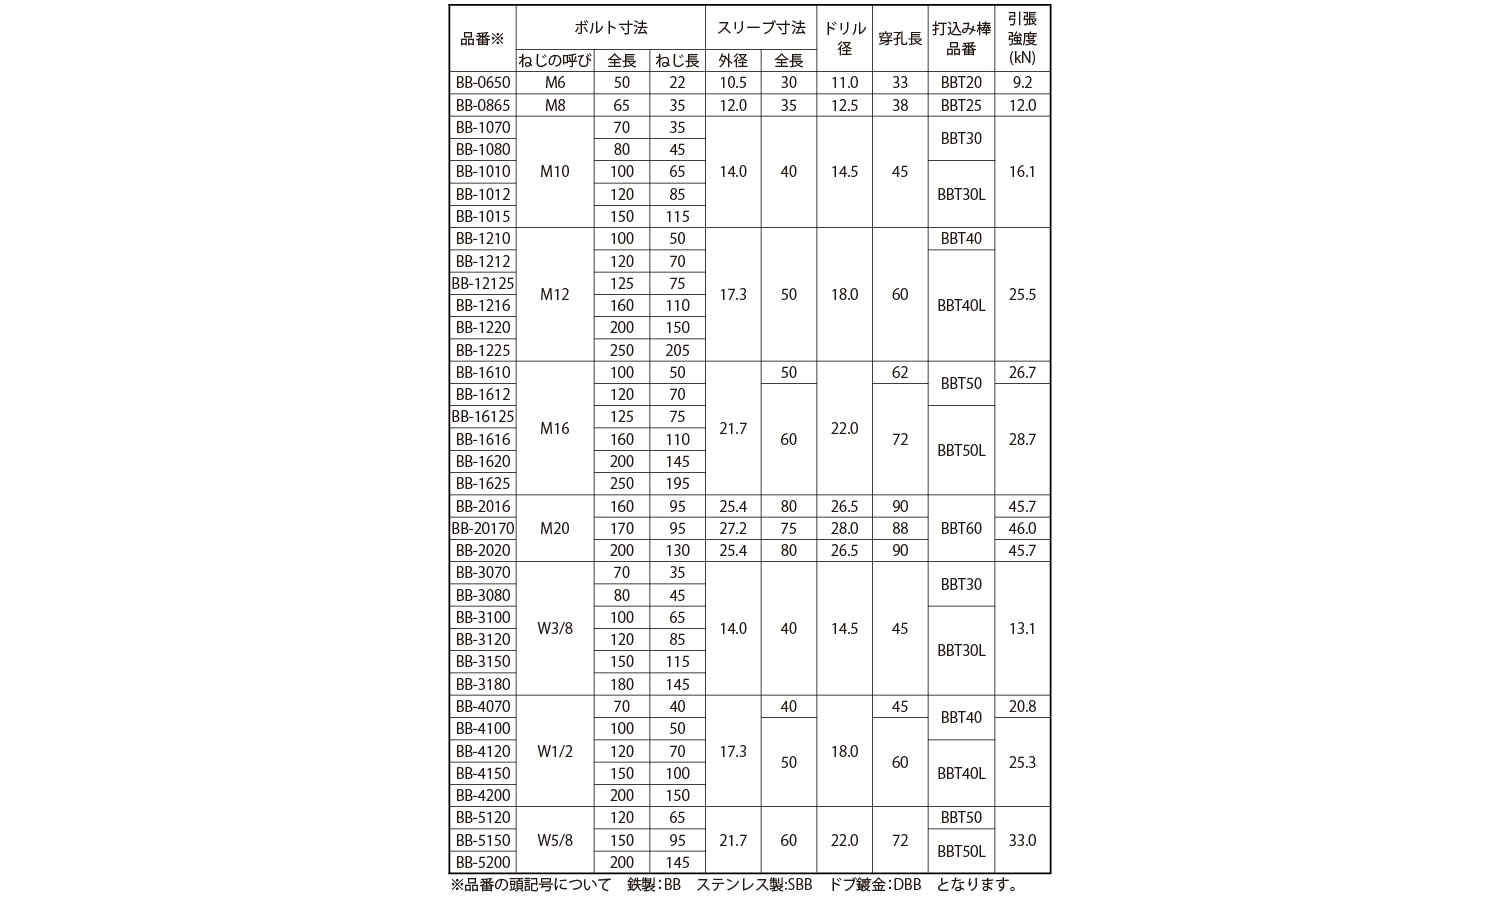 ビルボルトビルボルト  DBB-1210 標準(または鉄) ドブ(溶融亜鉛めっき) - 3